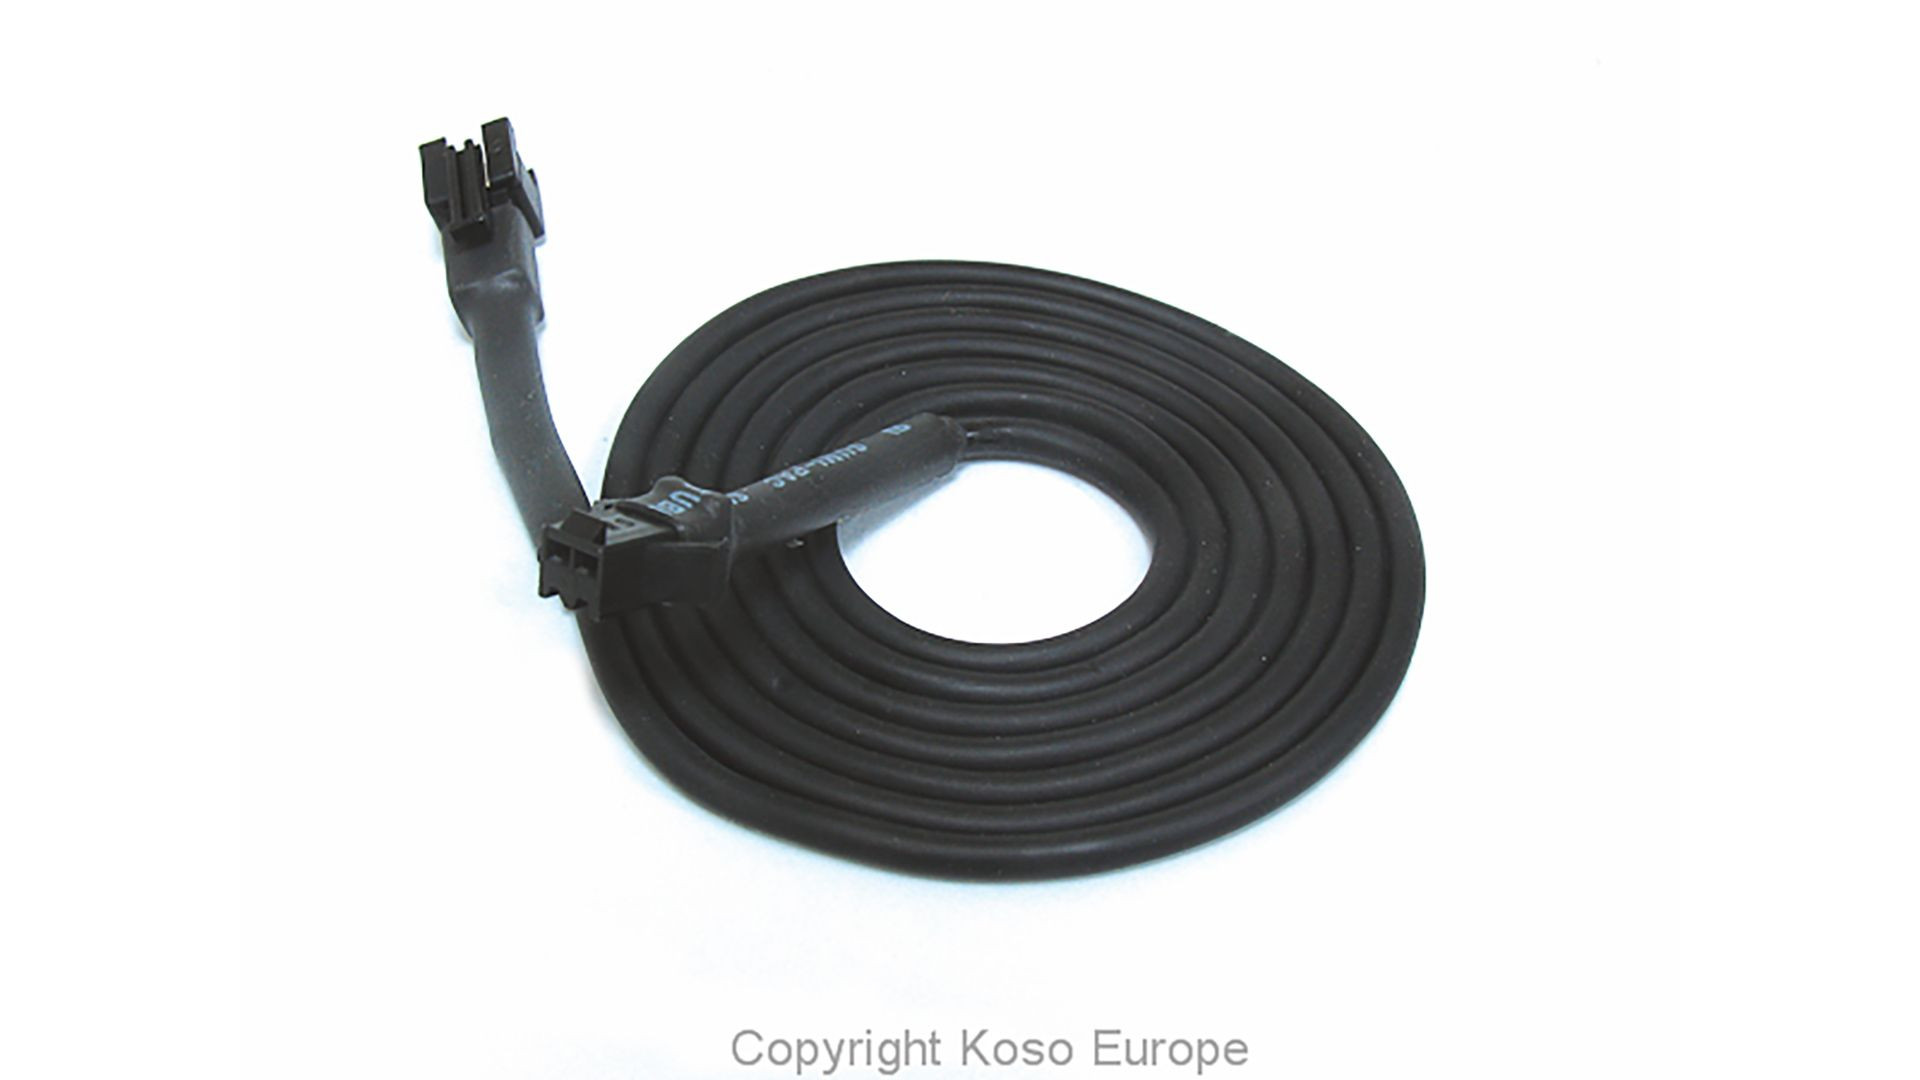 KOSO Kabel fuer Temperatursensor 1 Meter, (schwarzer Stecker)